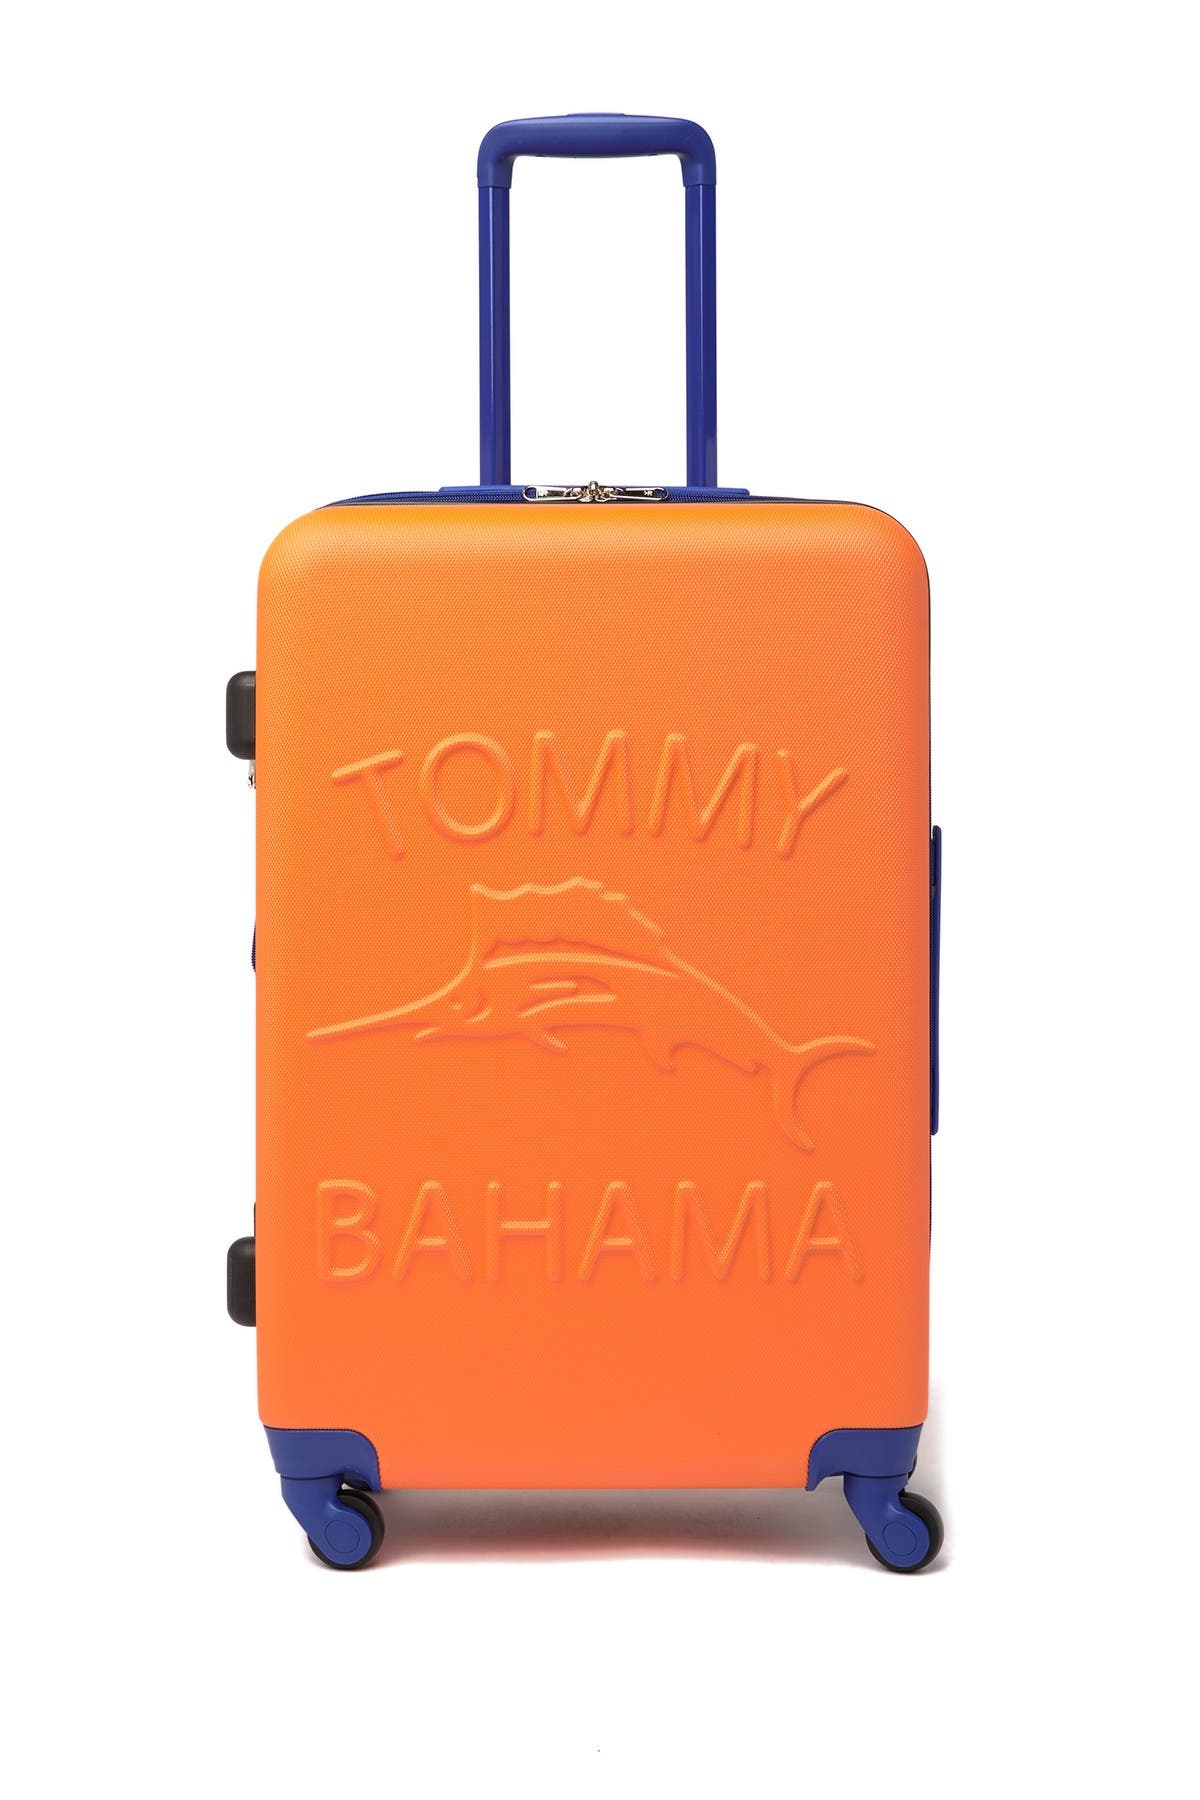 tommy bahama chesapeake bay luggage